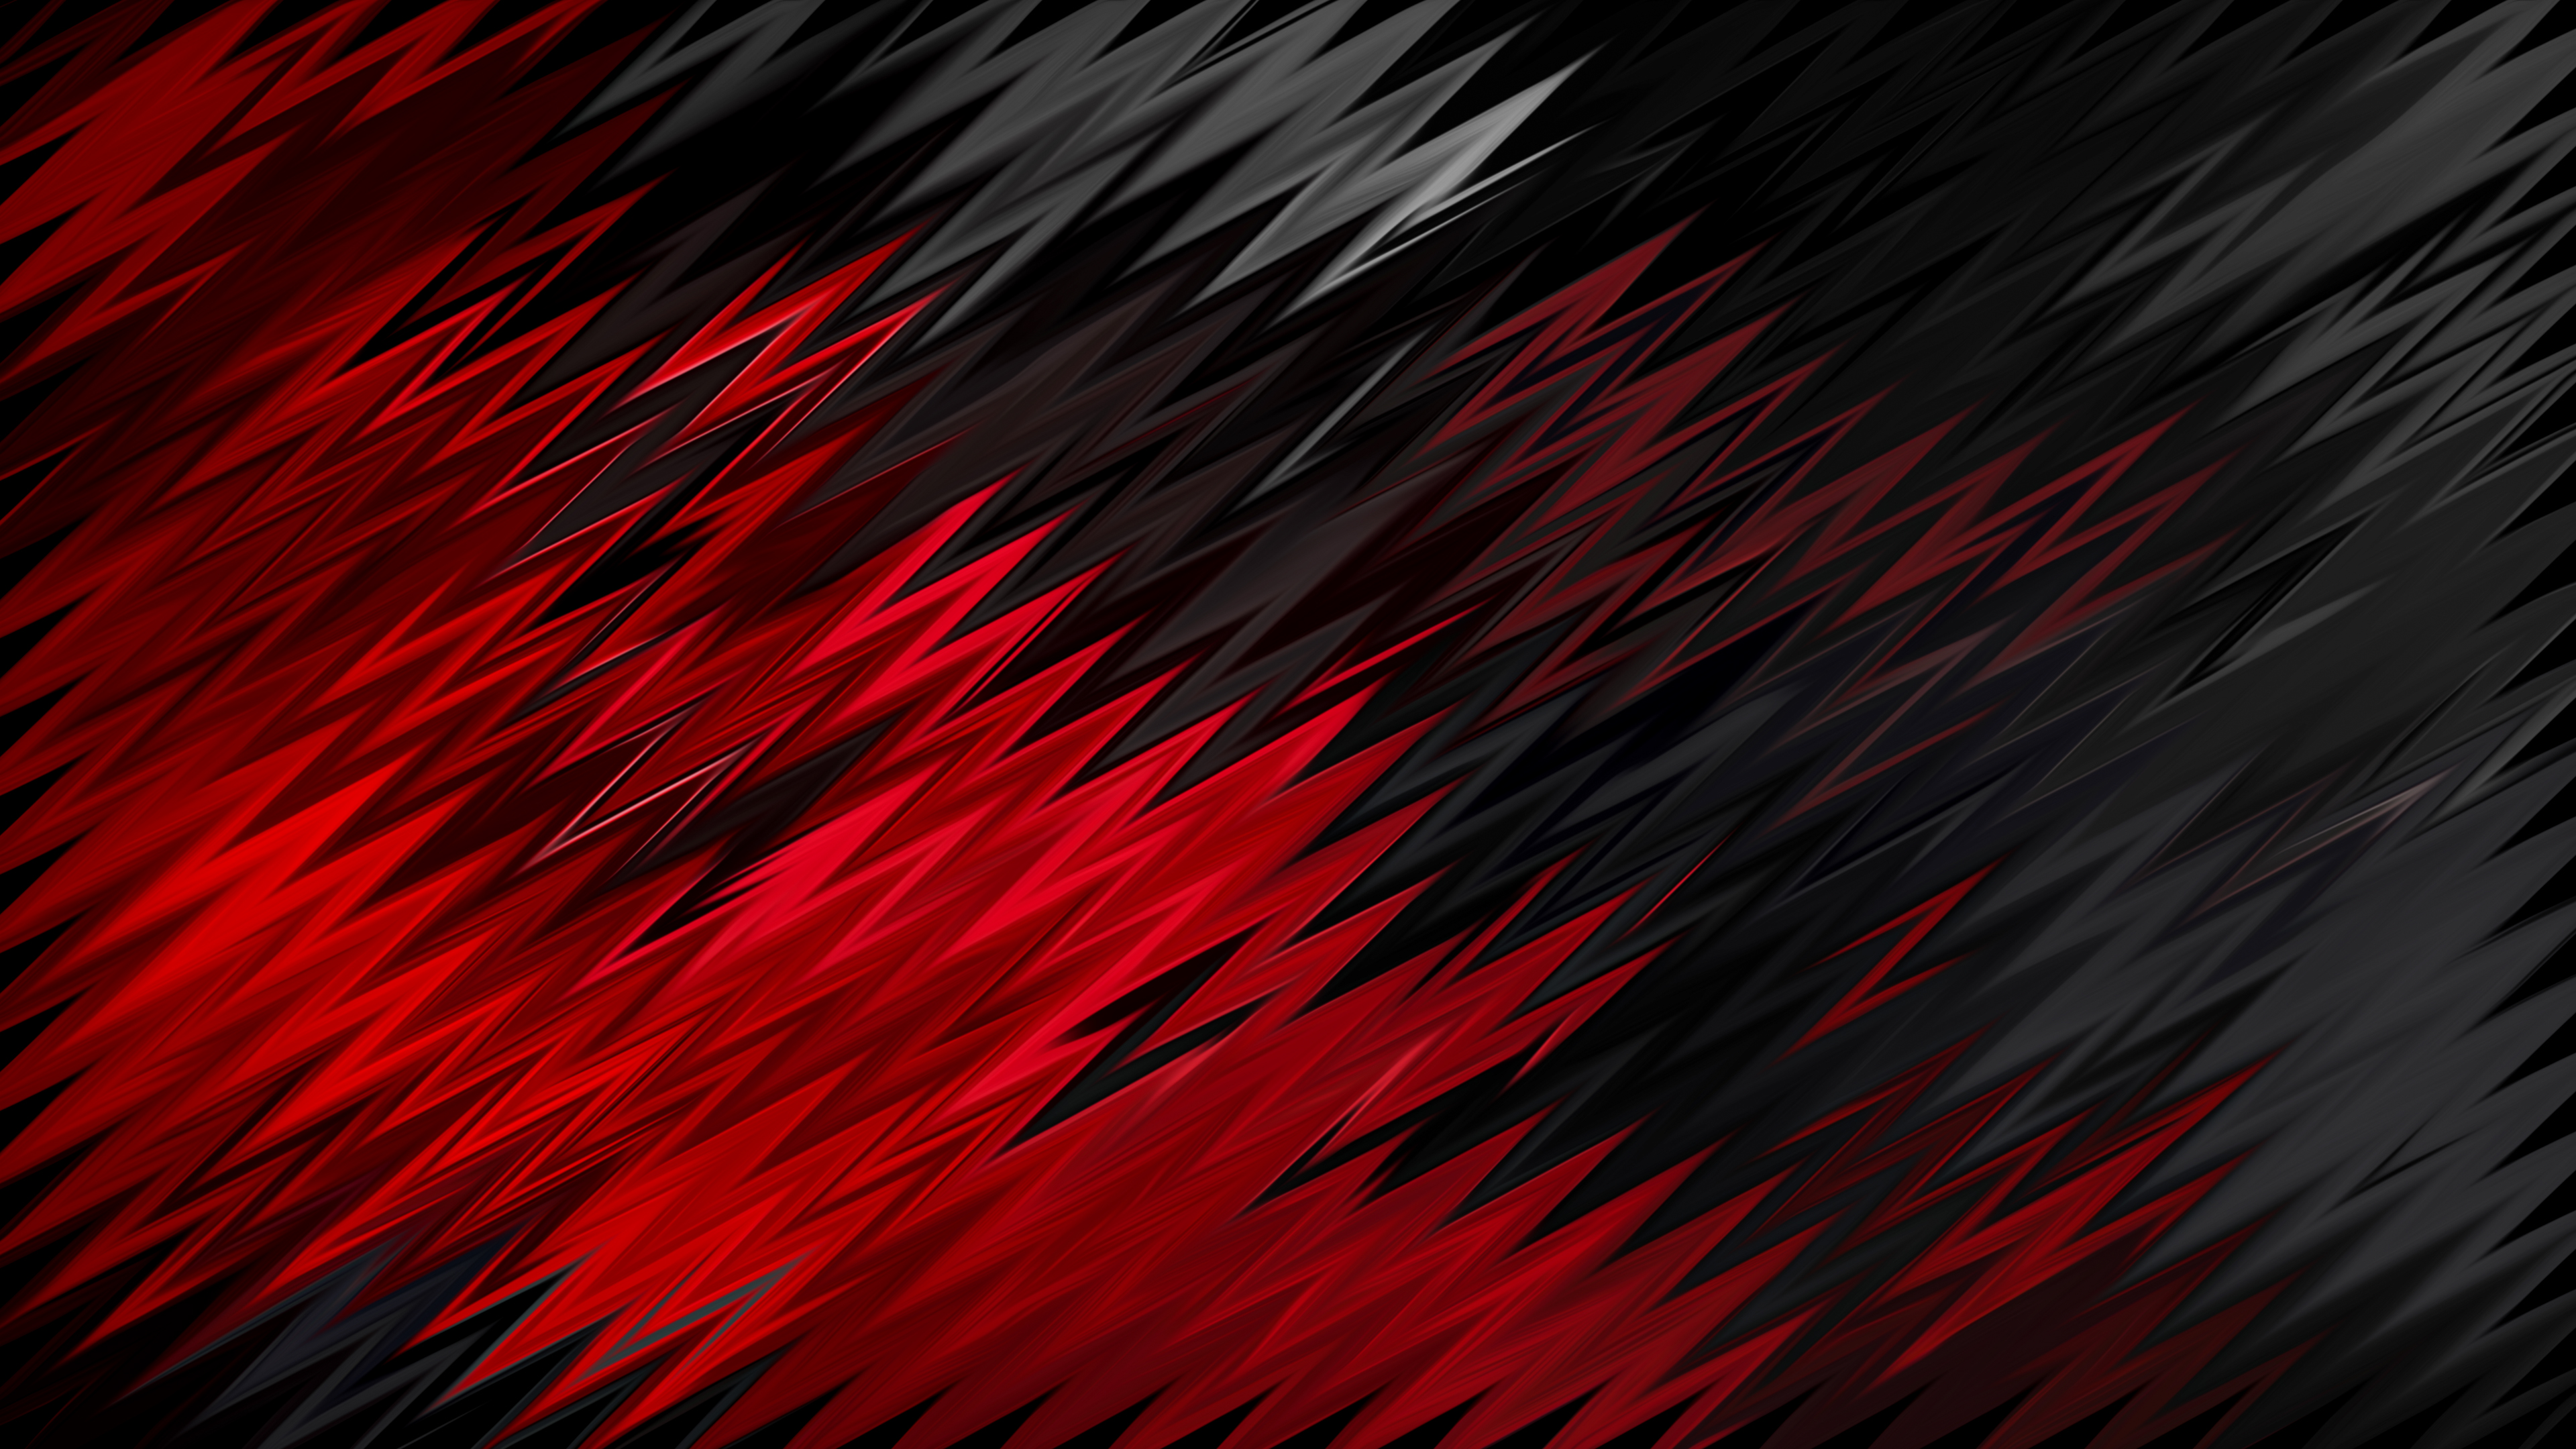 Hình nền trừu tượng đen đỏ: Hình nền trừu tượng đen đỏ là sự kết hợp hoàn hảo giữa hai màu sắc mạnh mẽ và nổi bật. Với hình ảnh trừu tượng độc đáo, hình nền sẽ khiến cho màn hình của bạn trở nên đầy tính nghệ thuật và bắt mắt.